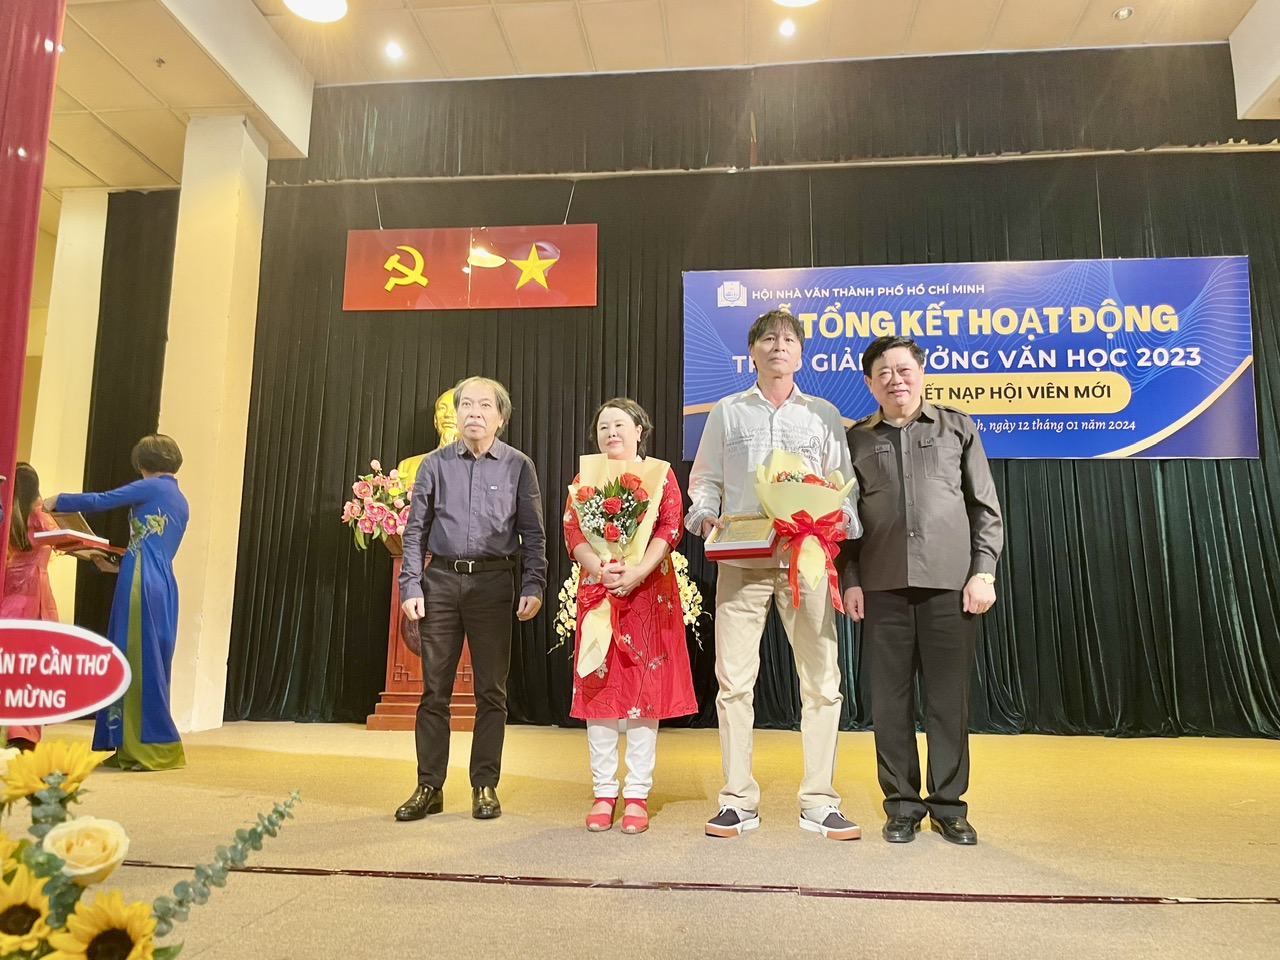 Hội Nhà văn Thành phố Hồ Chí Minh tổ chức Lễ Tổng kết năm 2023 - 2